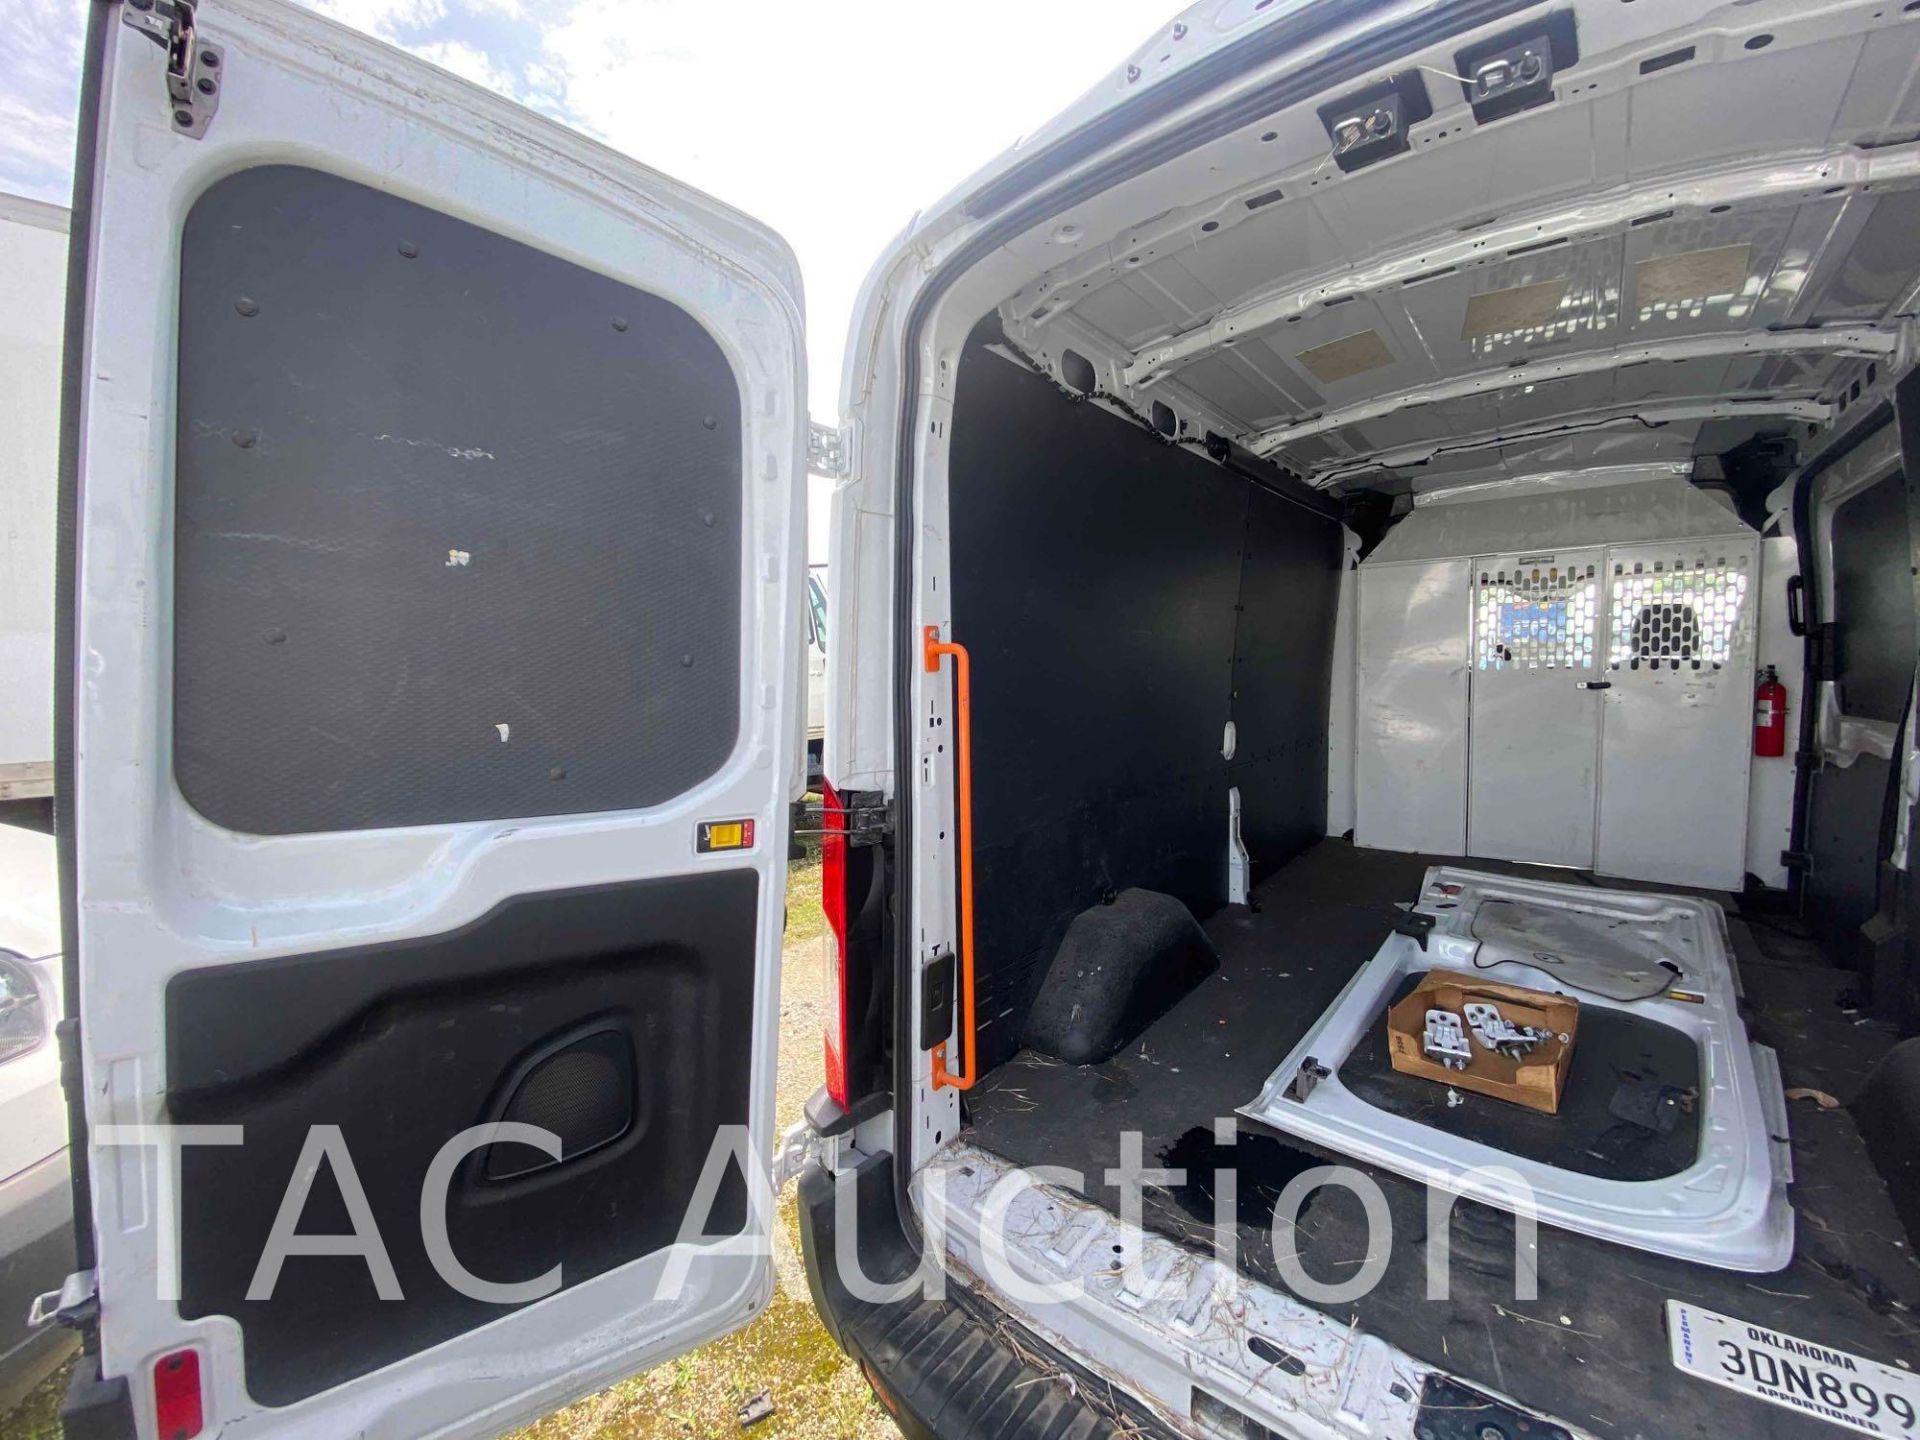 2019 Ford Transit 150 Cargo Van - Image 12 of 50